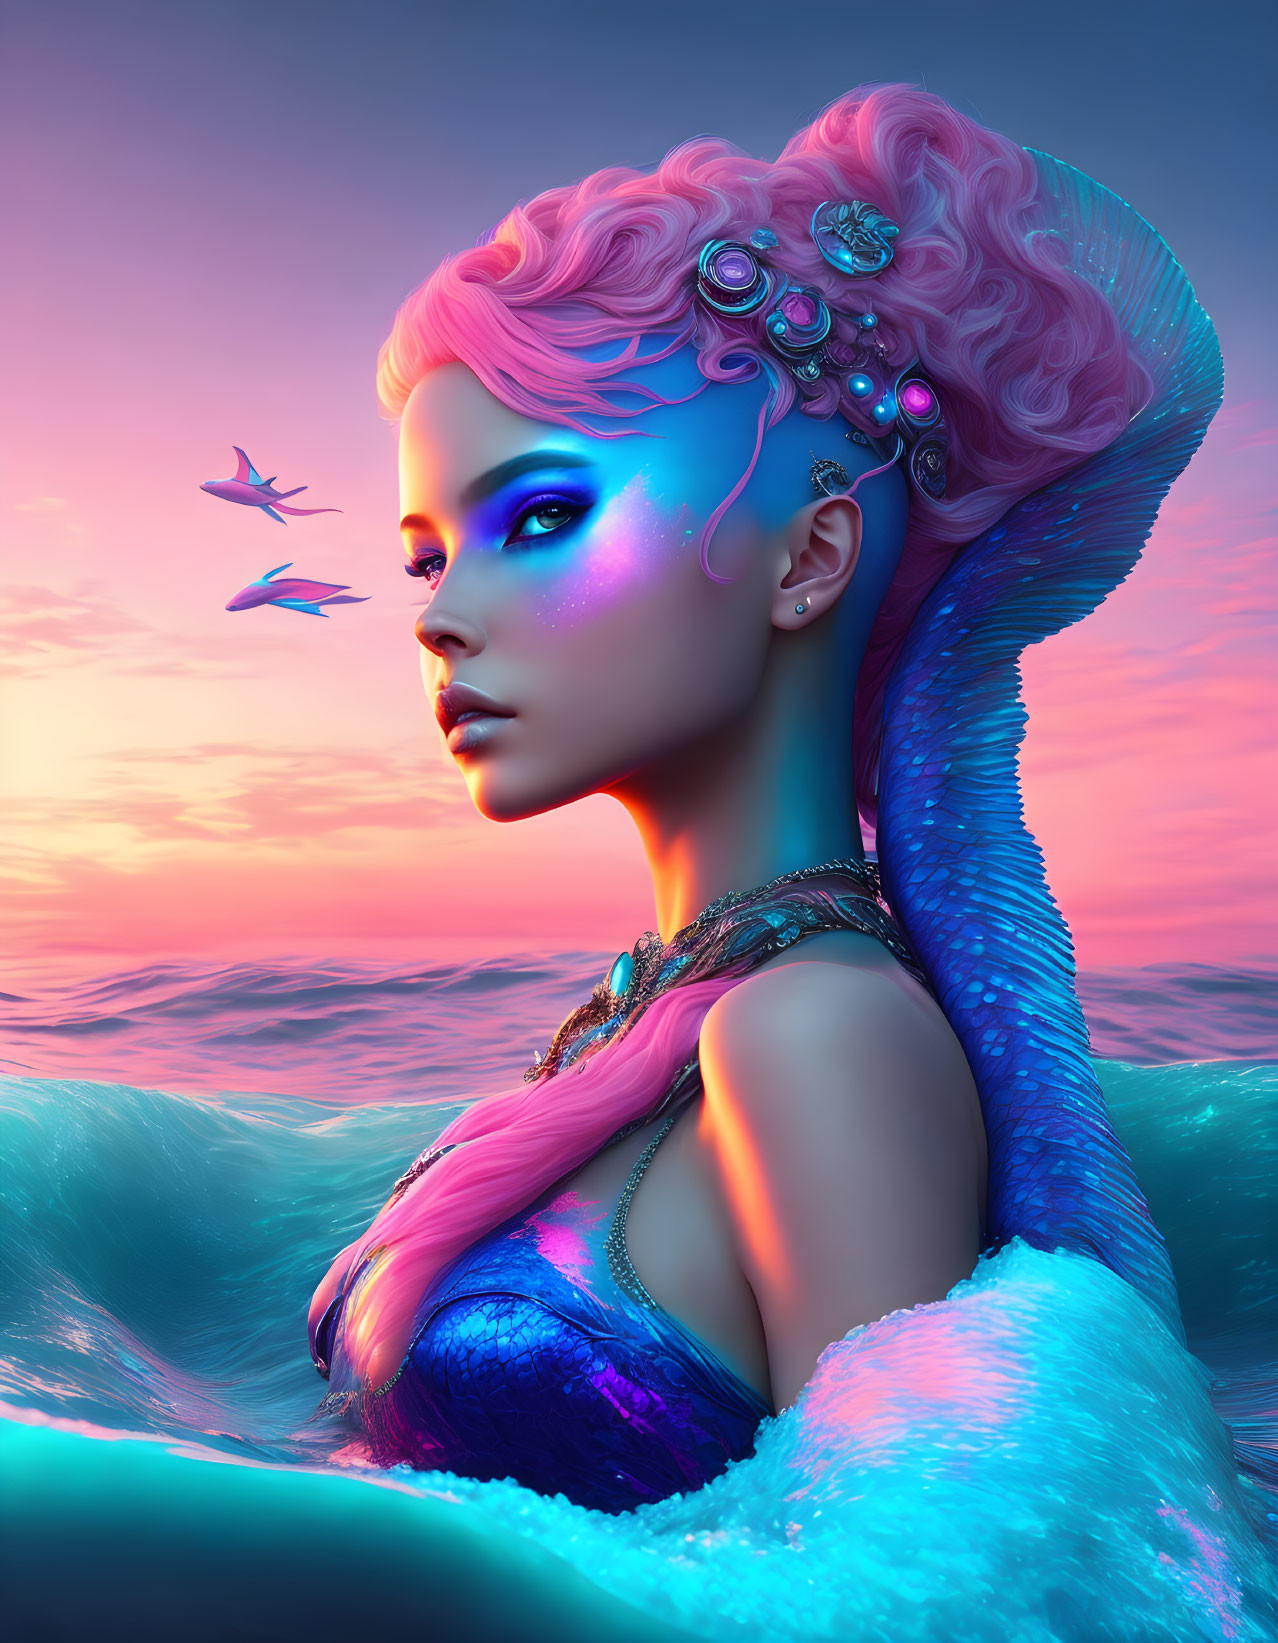 Mermaid with Pink Hair and Blue Skin in Ocean Twilight Scene